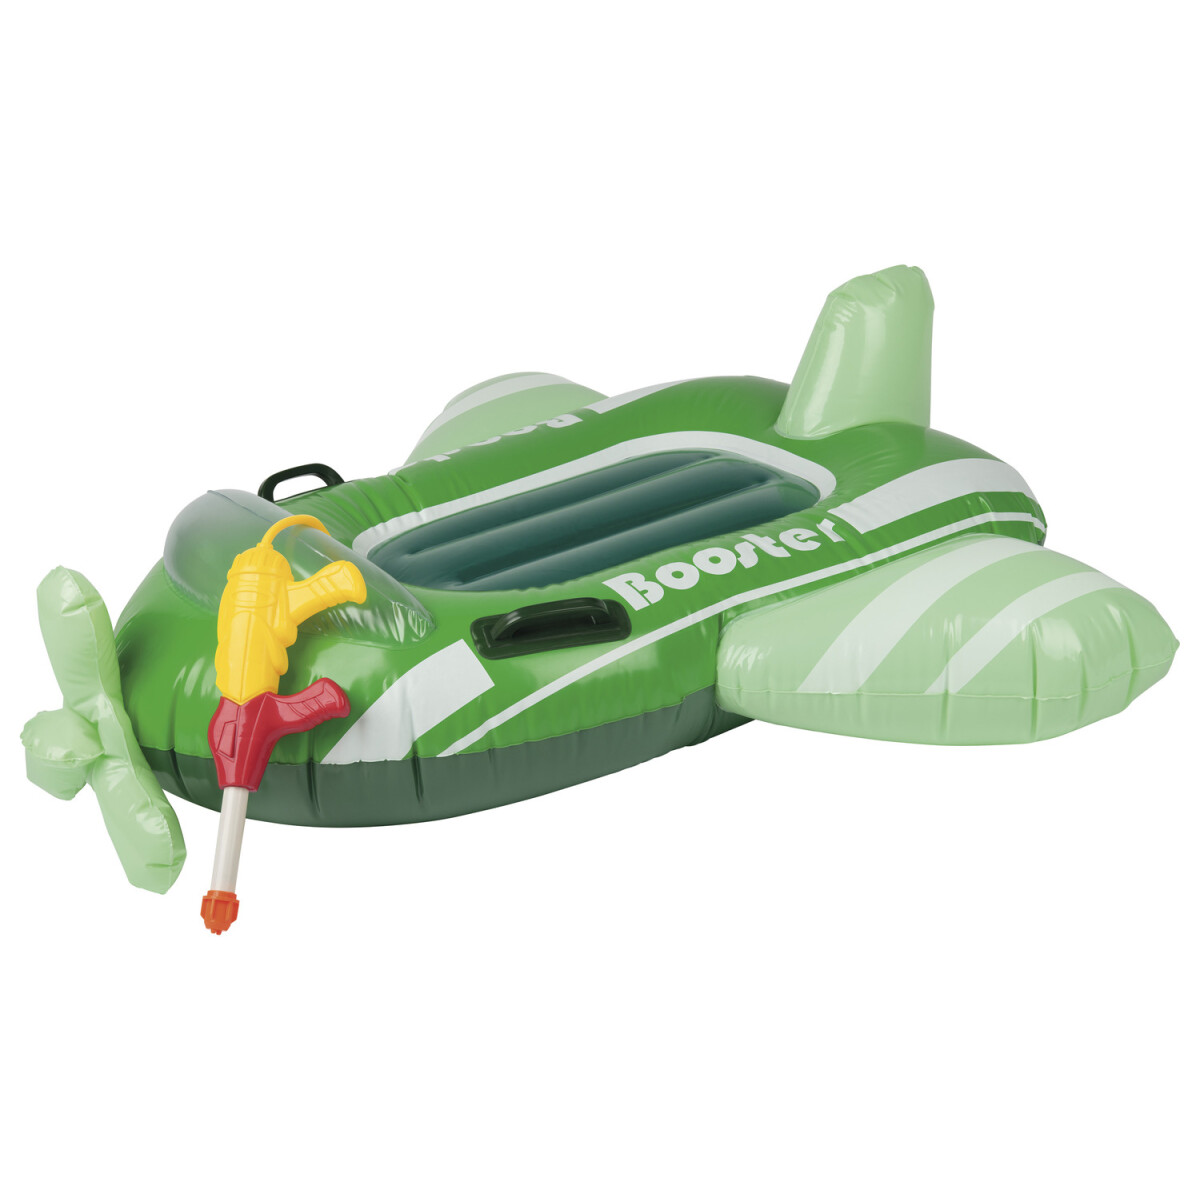 aufblasbar, B-Ware (Flugzeug) Wasserspritzpistole Playtive € mit Sitzboote, neuwertig, Kinder 12,99 -